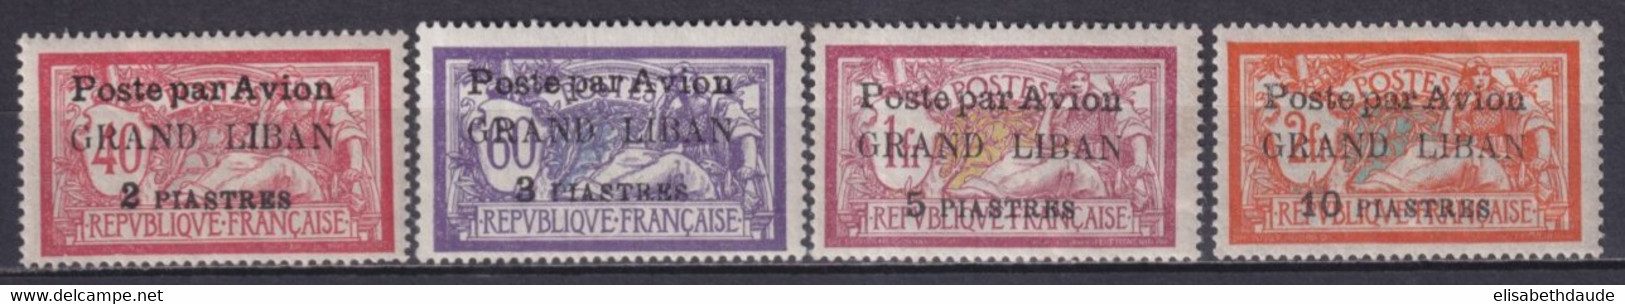 GRAND-LIBAN - 1924 - POSTE AERIENNE YVERT N°1/4 * MH - COTE = 75 EUR. - Neufs